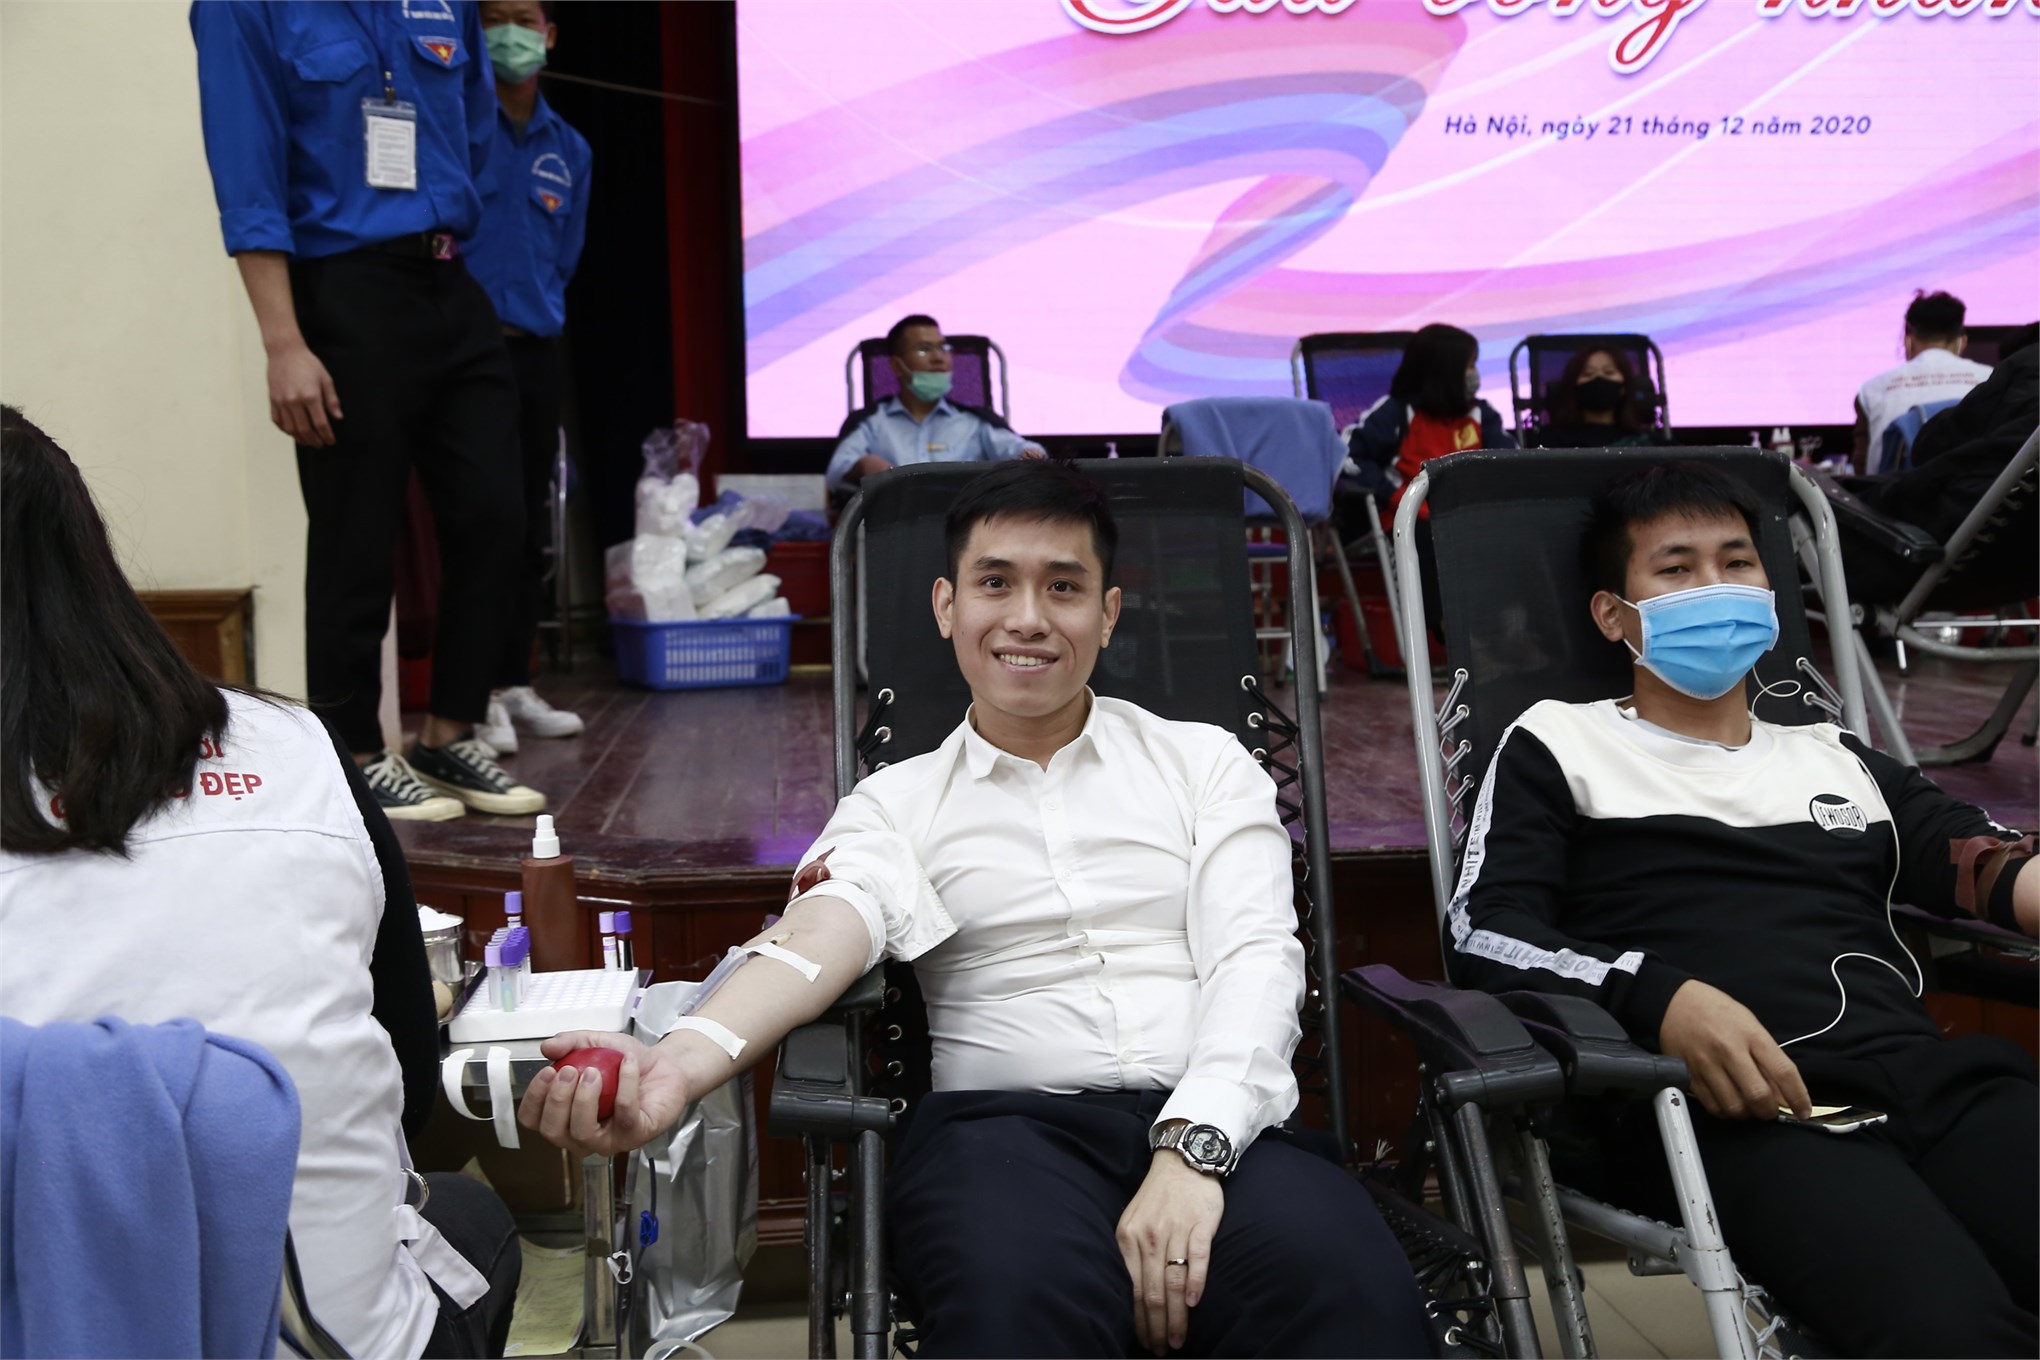 CBVC, sinh viên nhà trường hiến tặng 521 đơn vị máu tại Ngày hội Cầu vồng nhân ái năm 2020